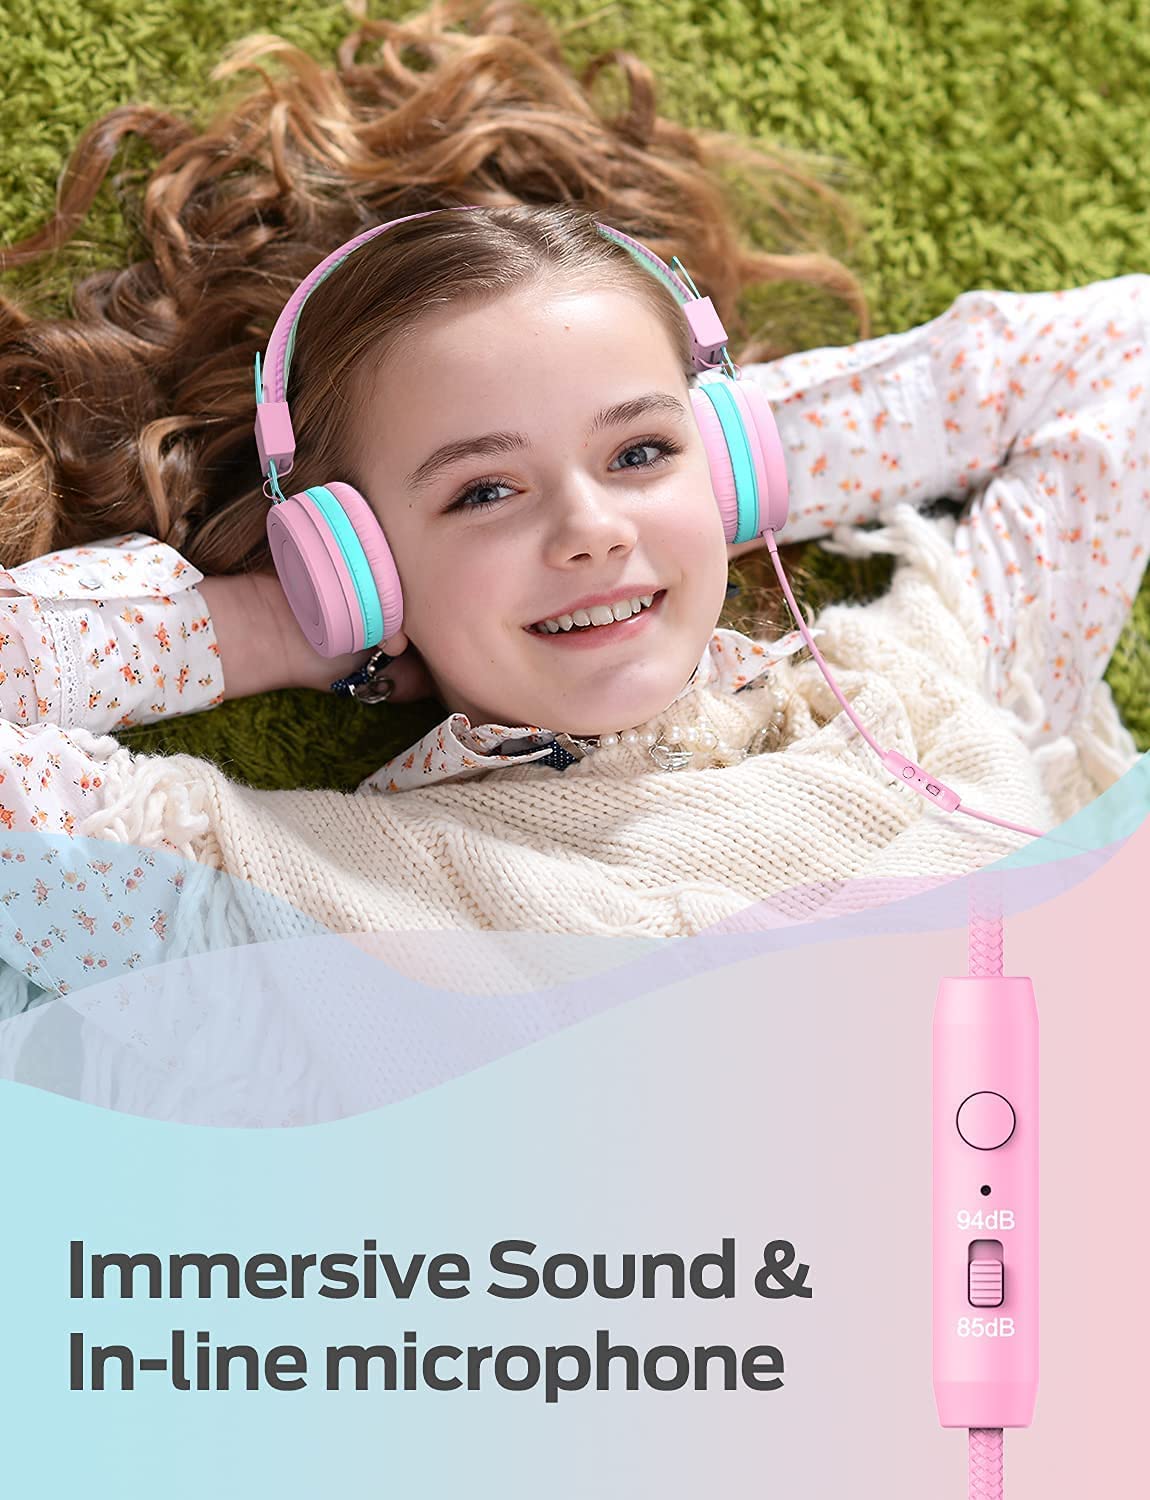 iClever Casque Audio Enfant 2 Pack, Filaire Ecouteurs pour Enfants